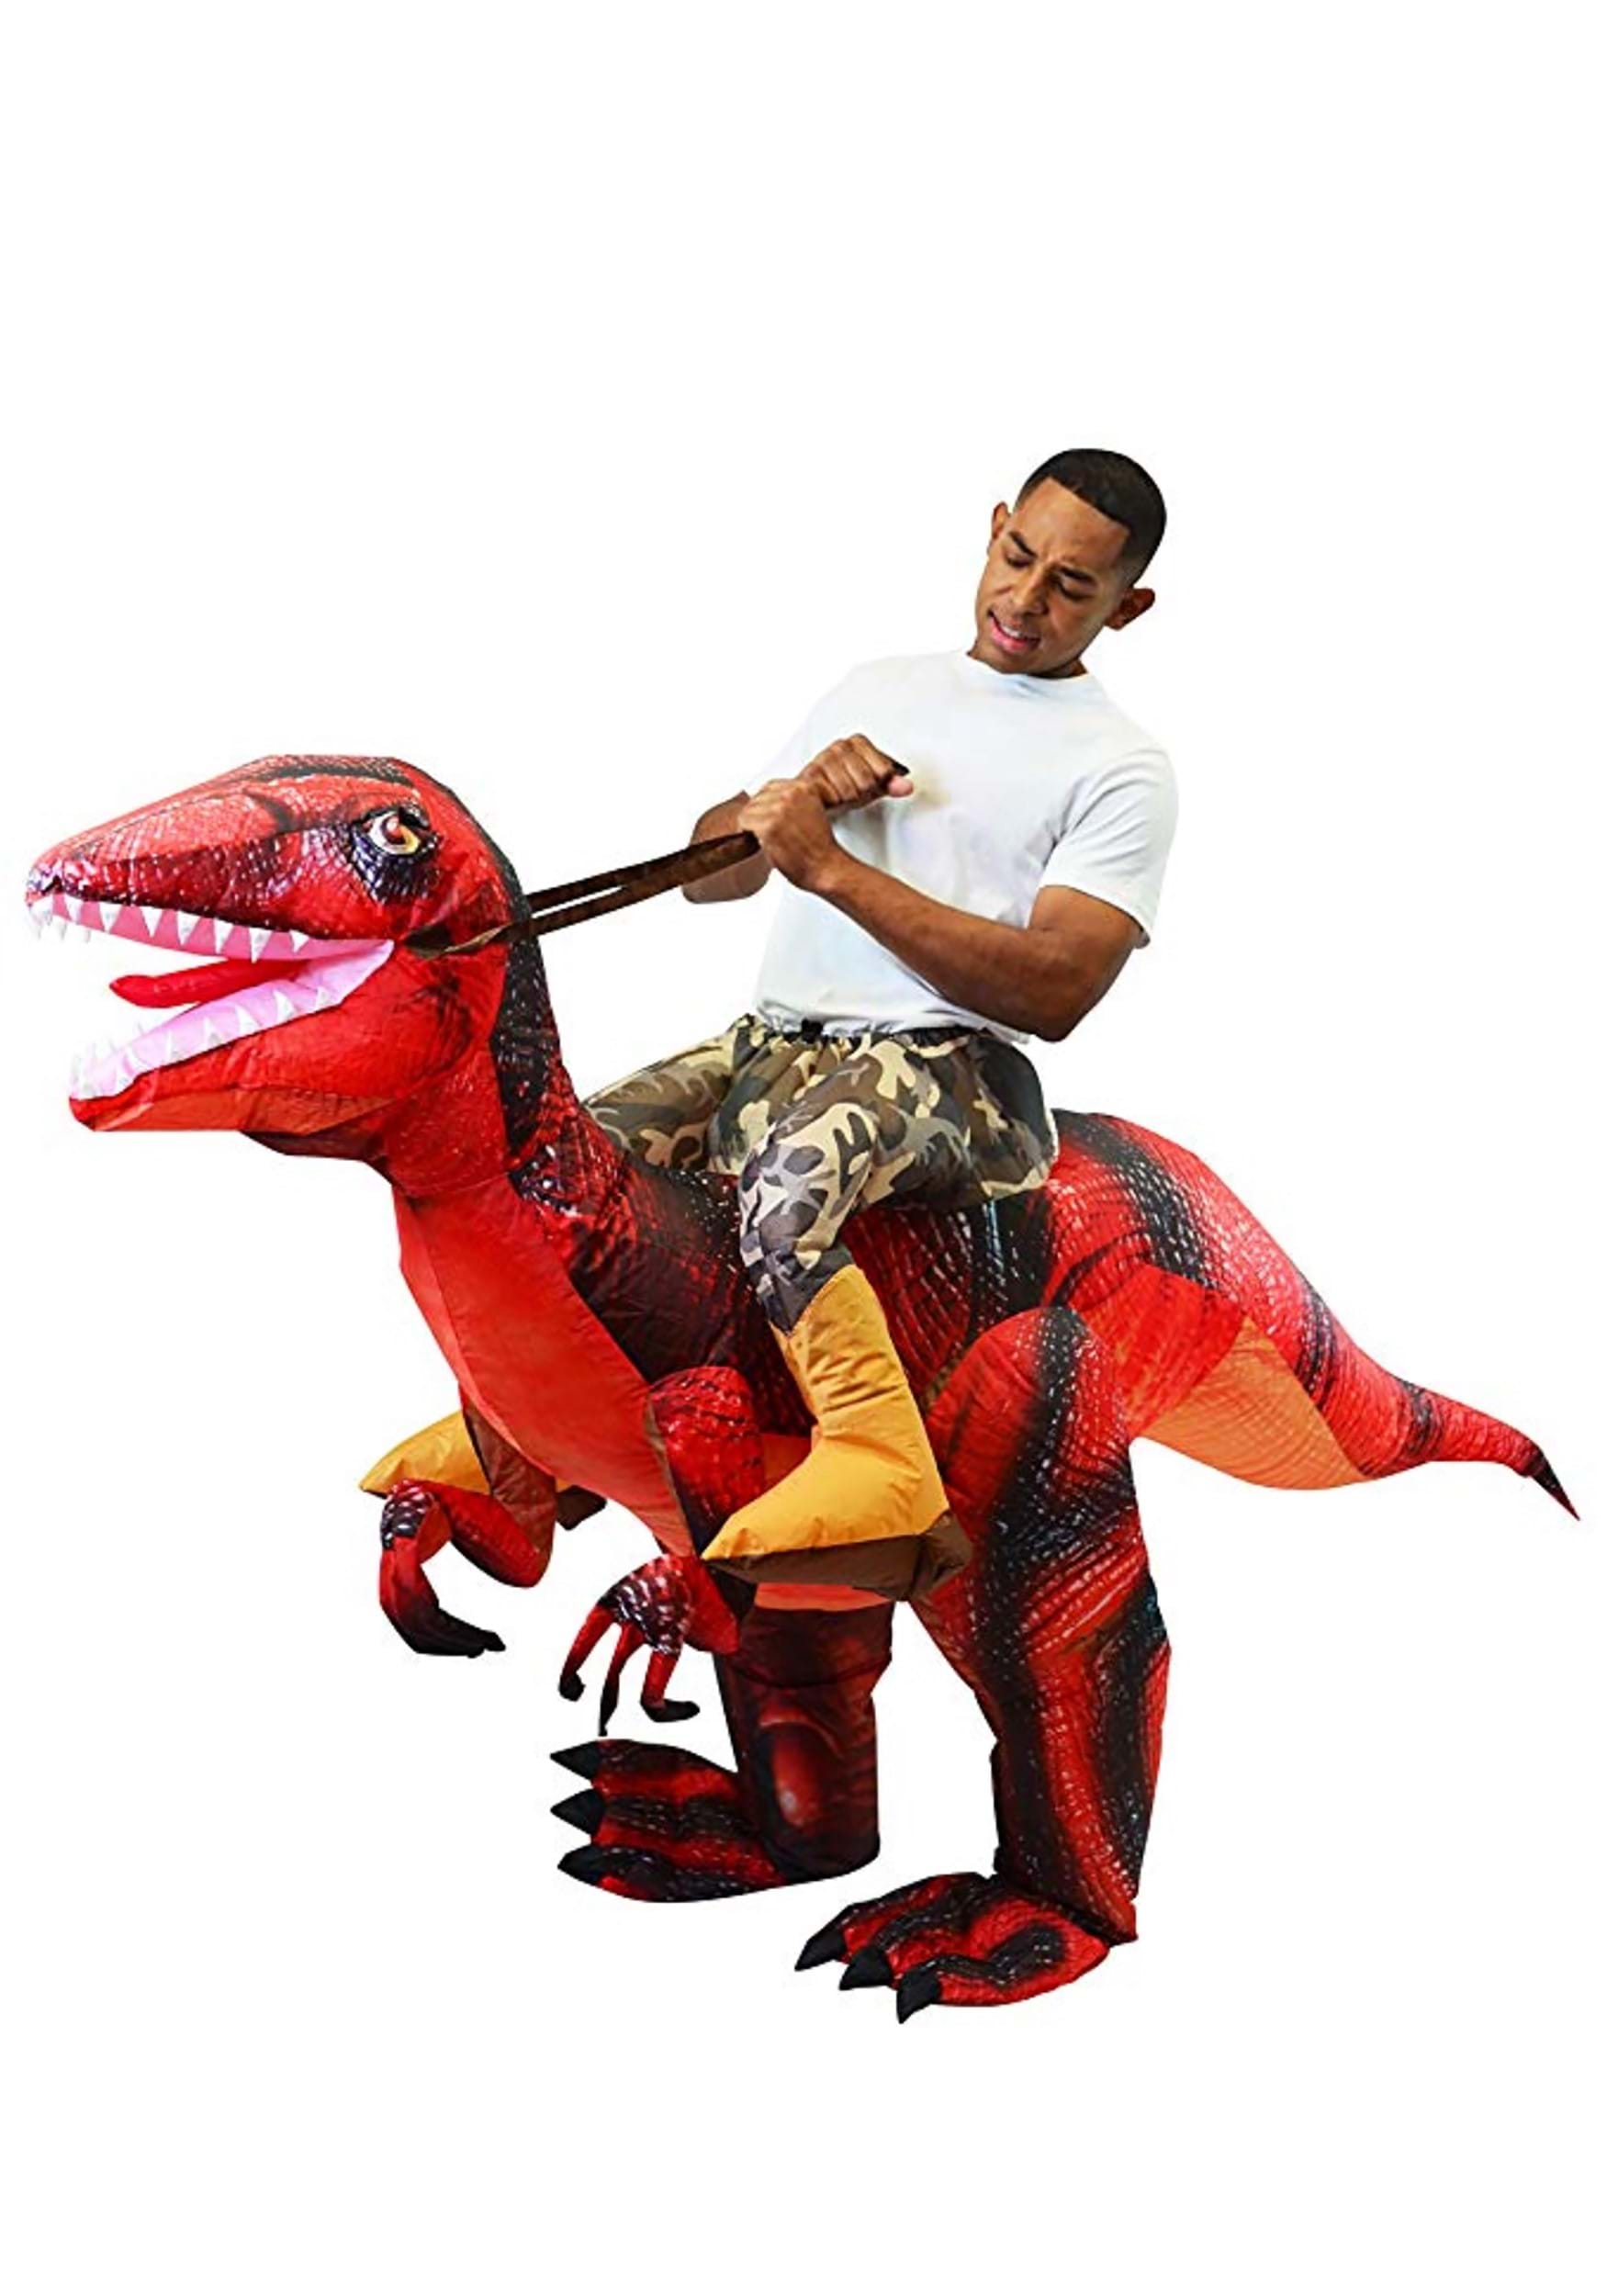 Disfraz de Raptor Raptor-A Red Raptor para adultos Multicolor Colombia